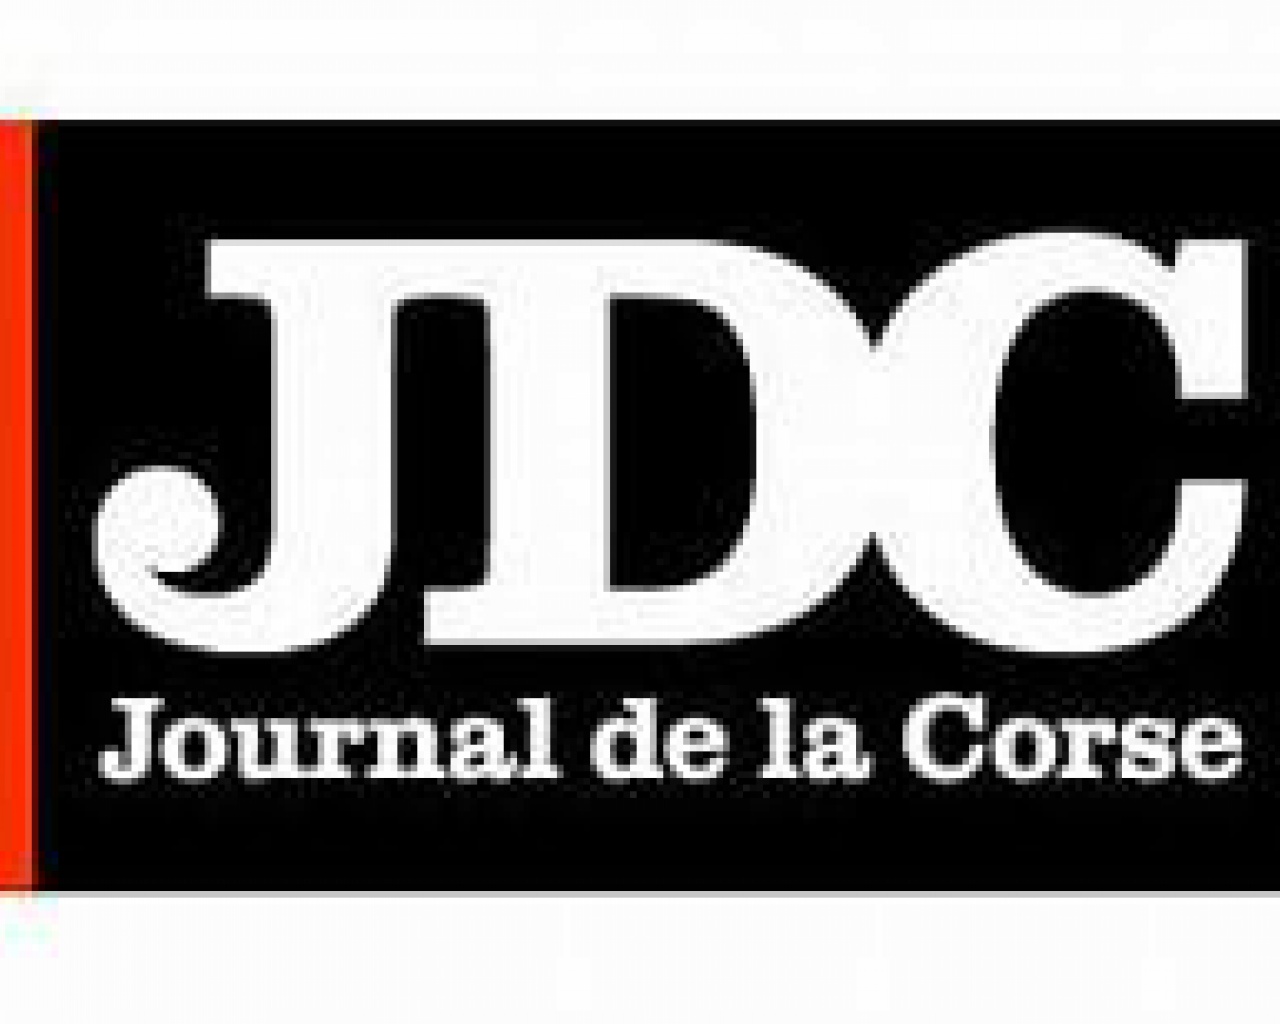 JOURNAL DE LA CORSE